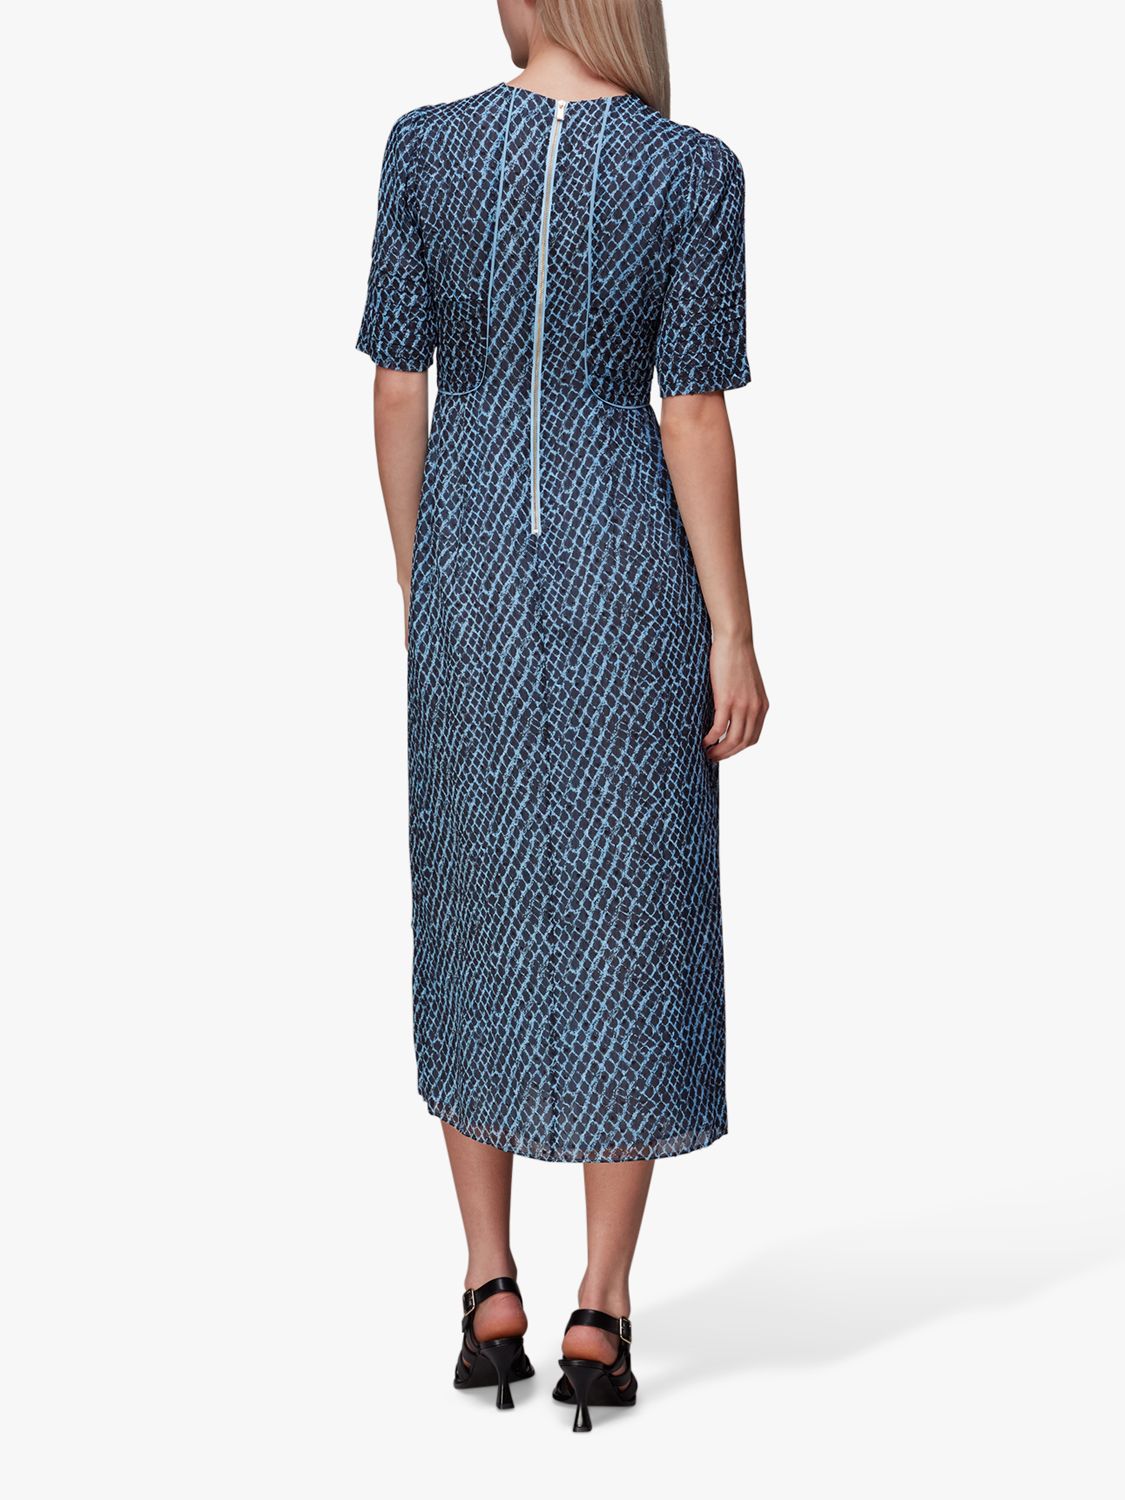 Whistles Brushed Geometric Print Midi Dress, Blue at John Lewis & Partners